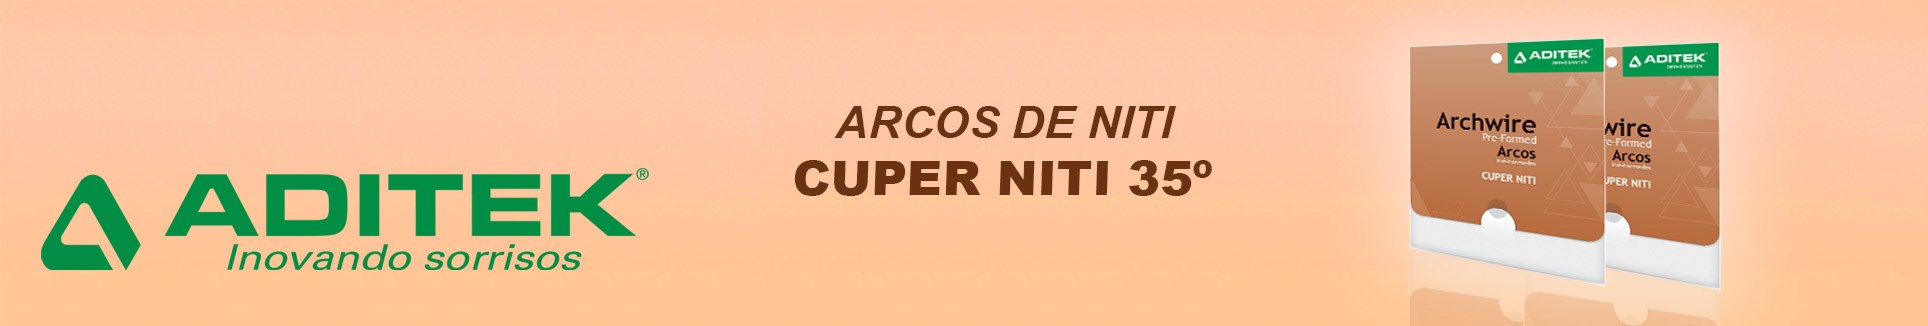 Arcos Niti Cuper 35